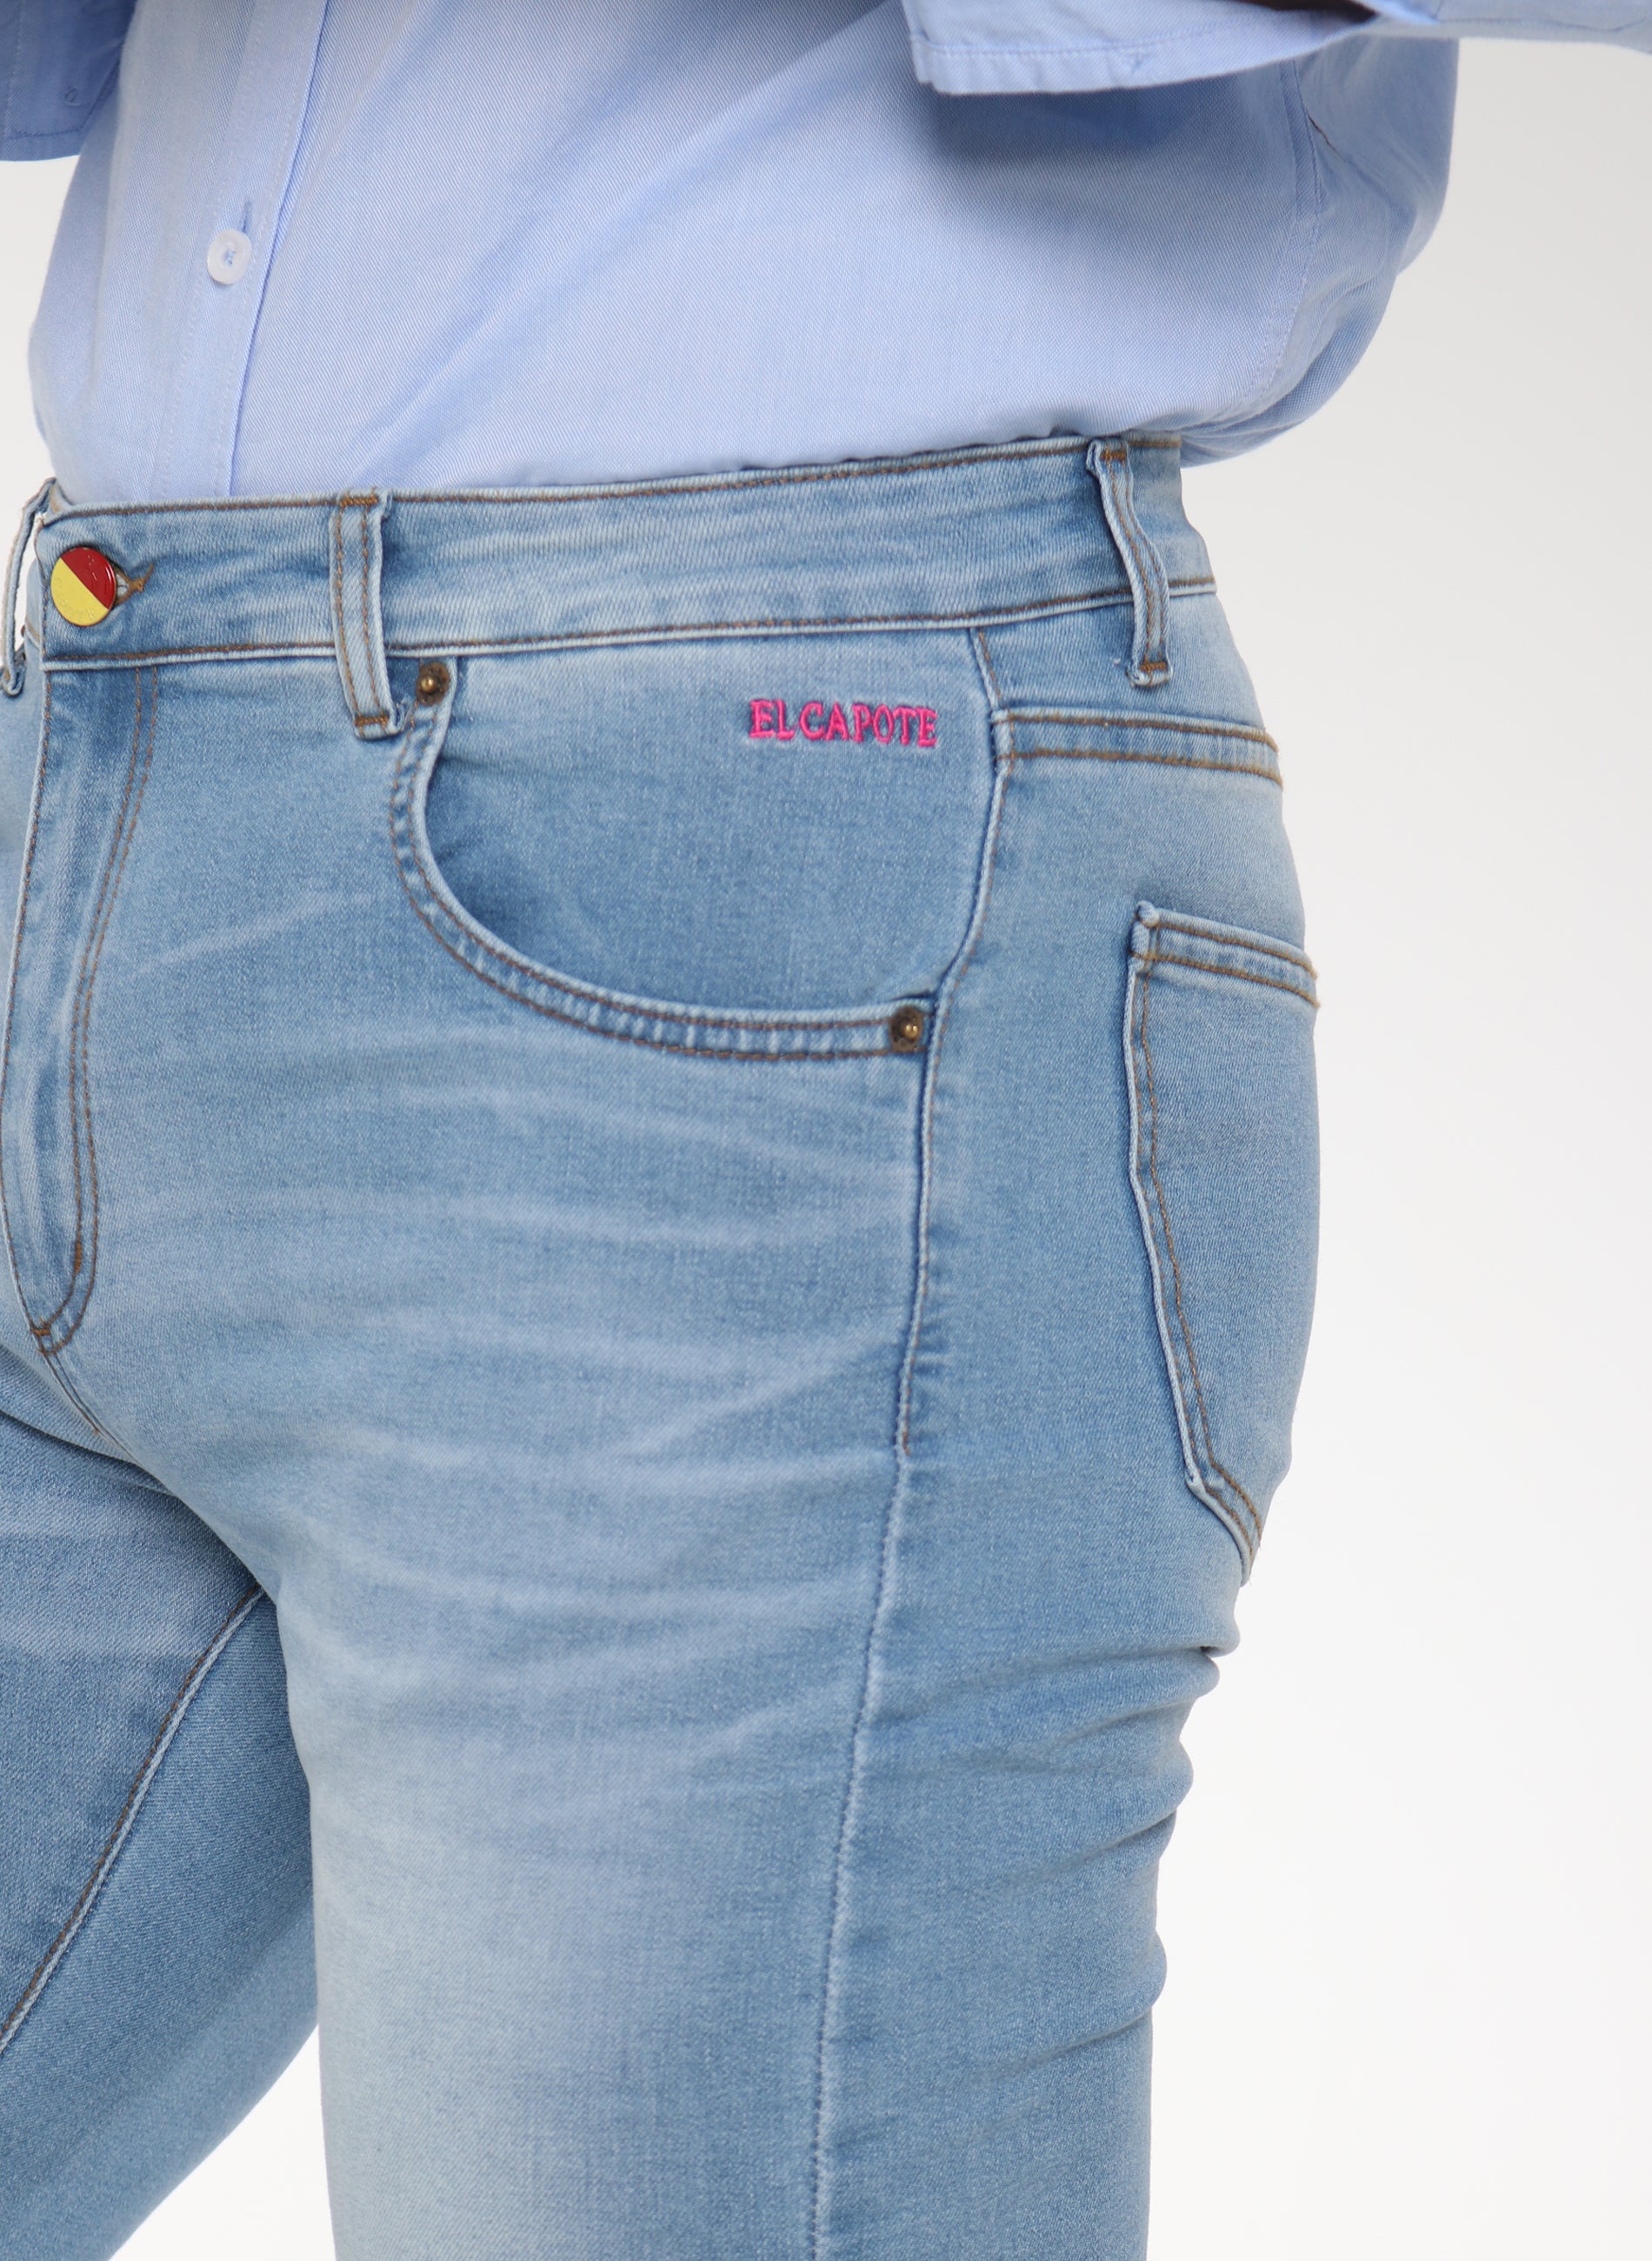 Laser-Jeanshose mit Logo für Herren